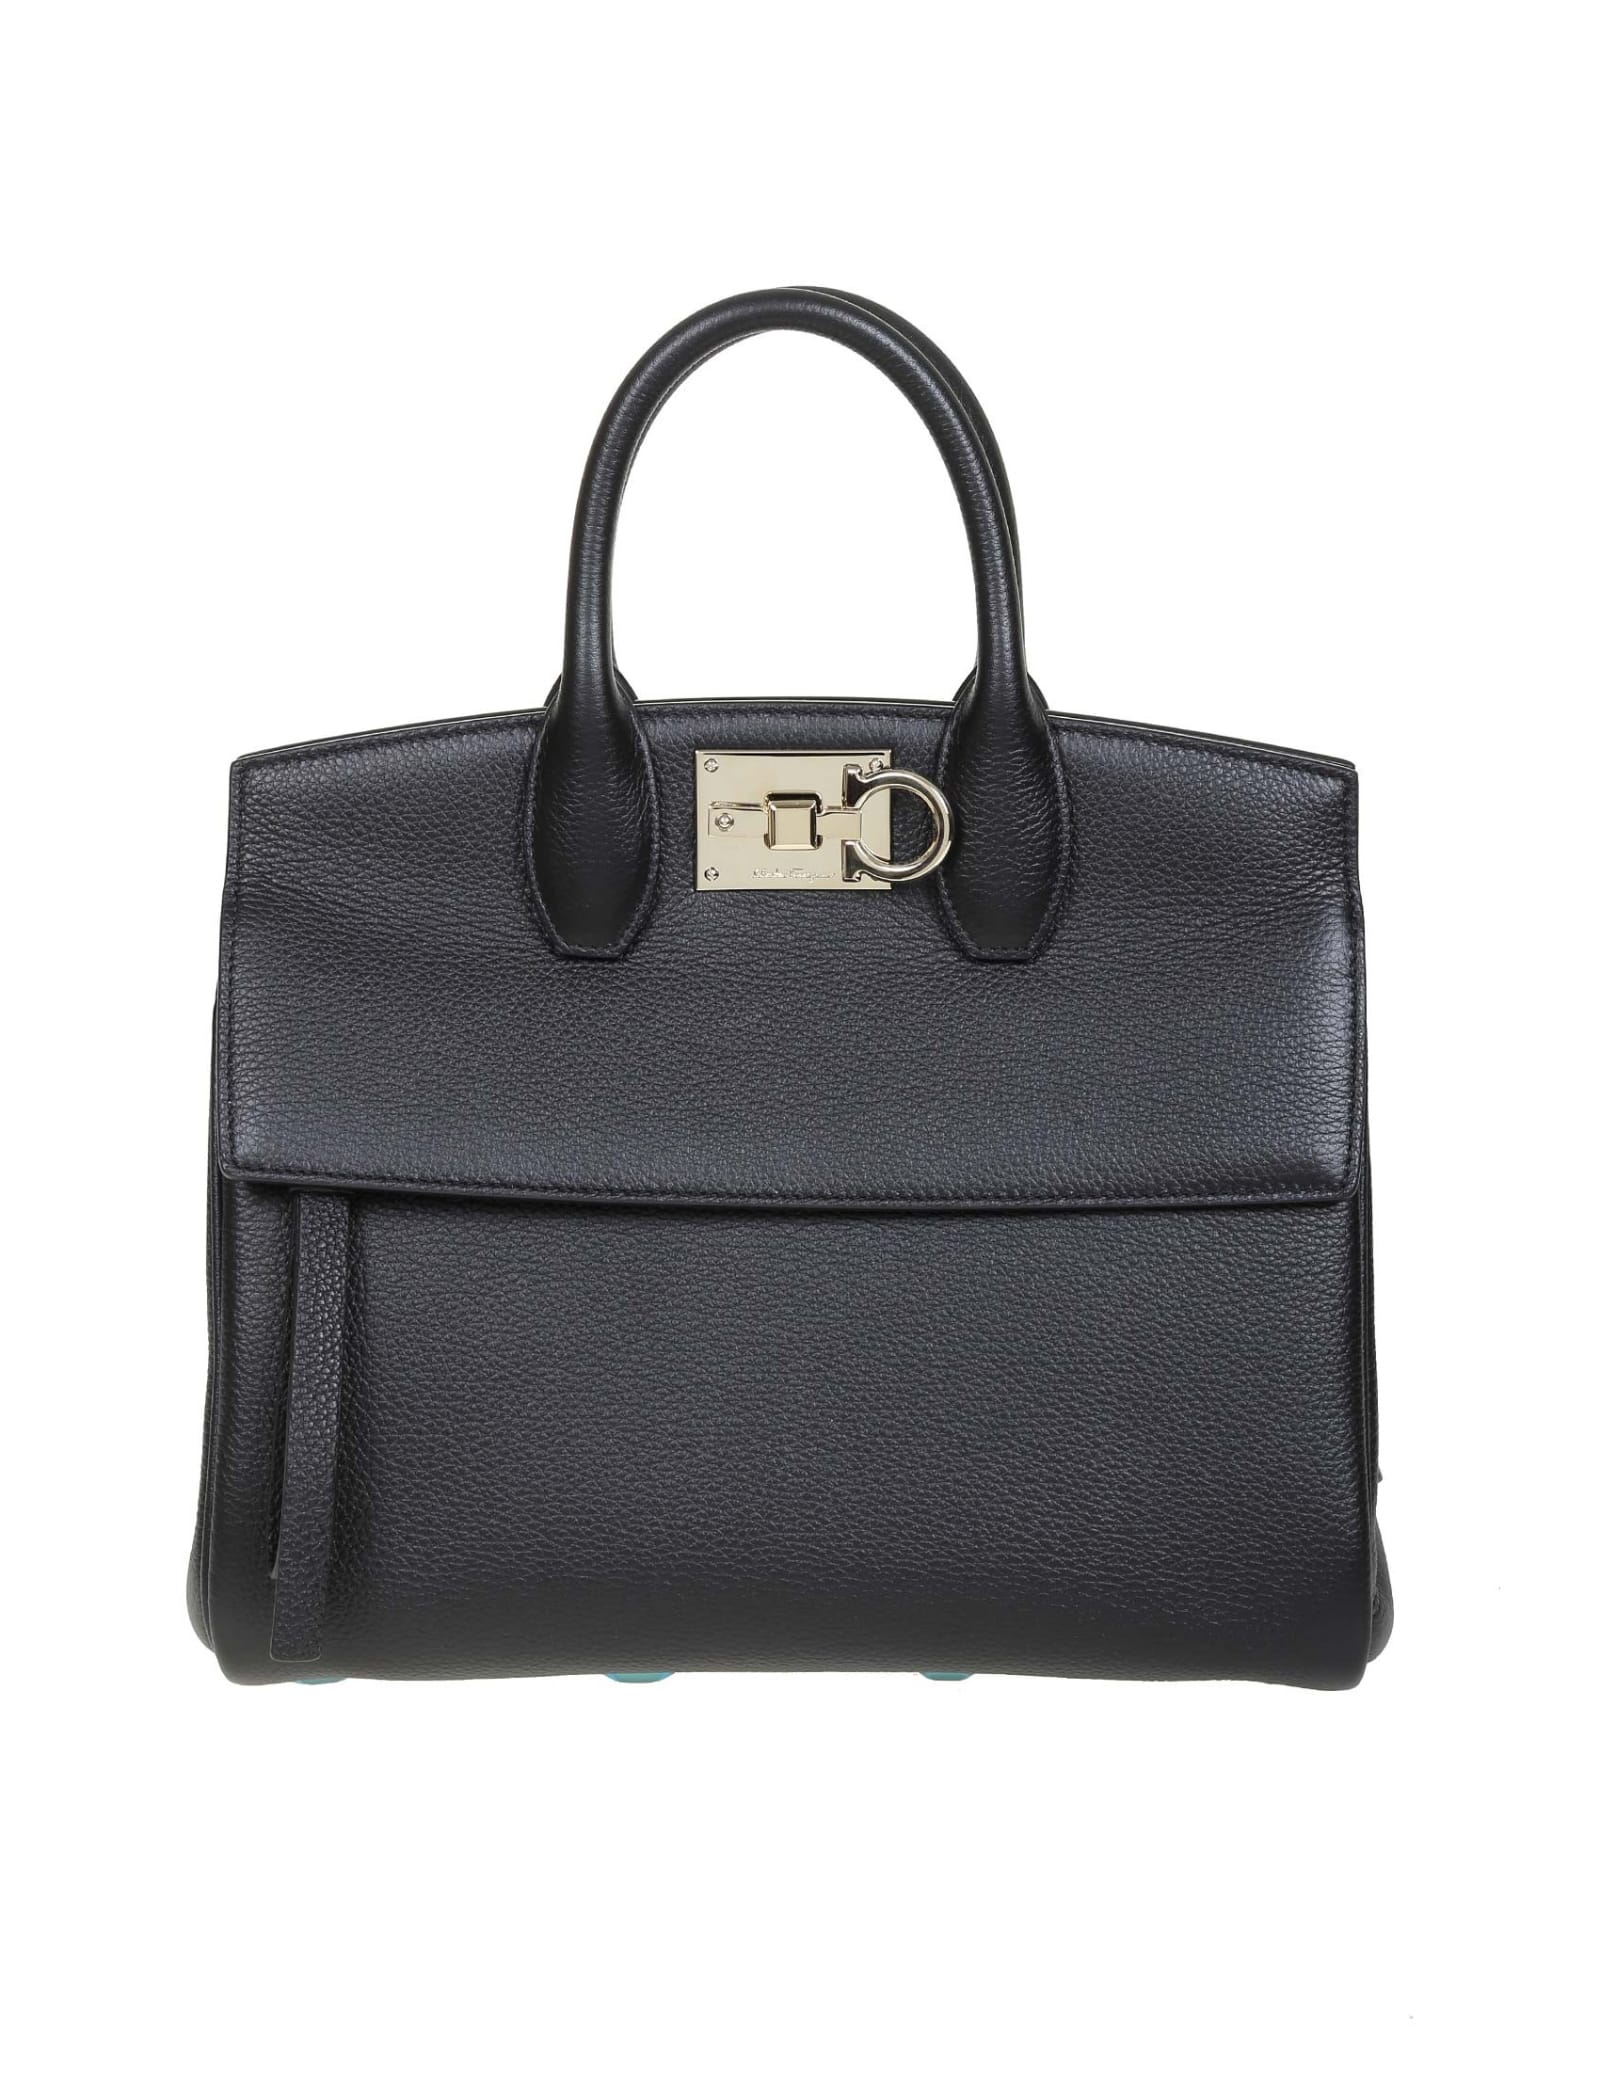 Salvatore Ferragamo Womens Bag Studio Small Leather Color Black